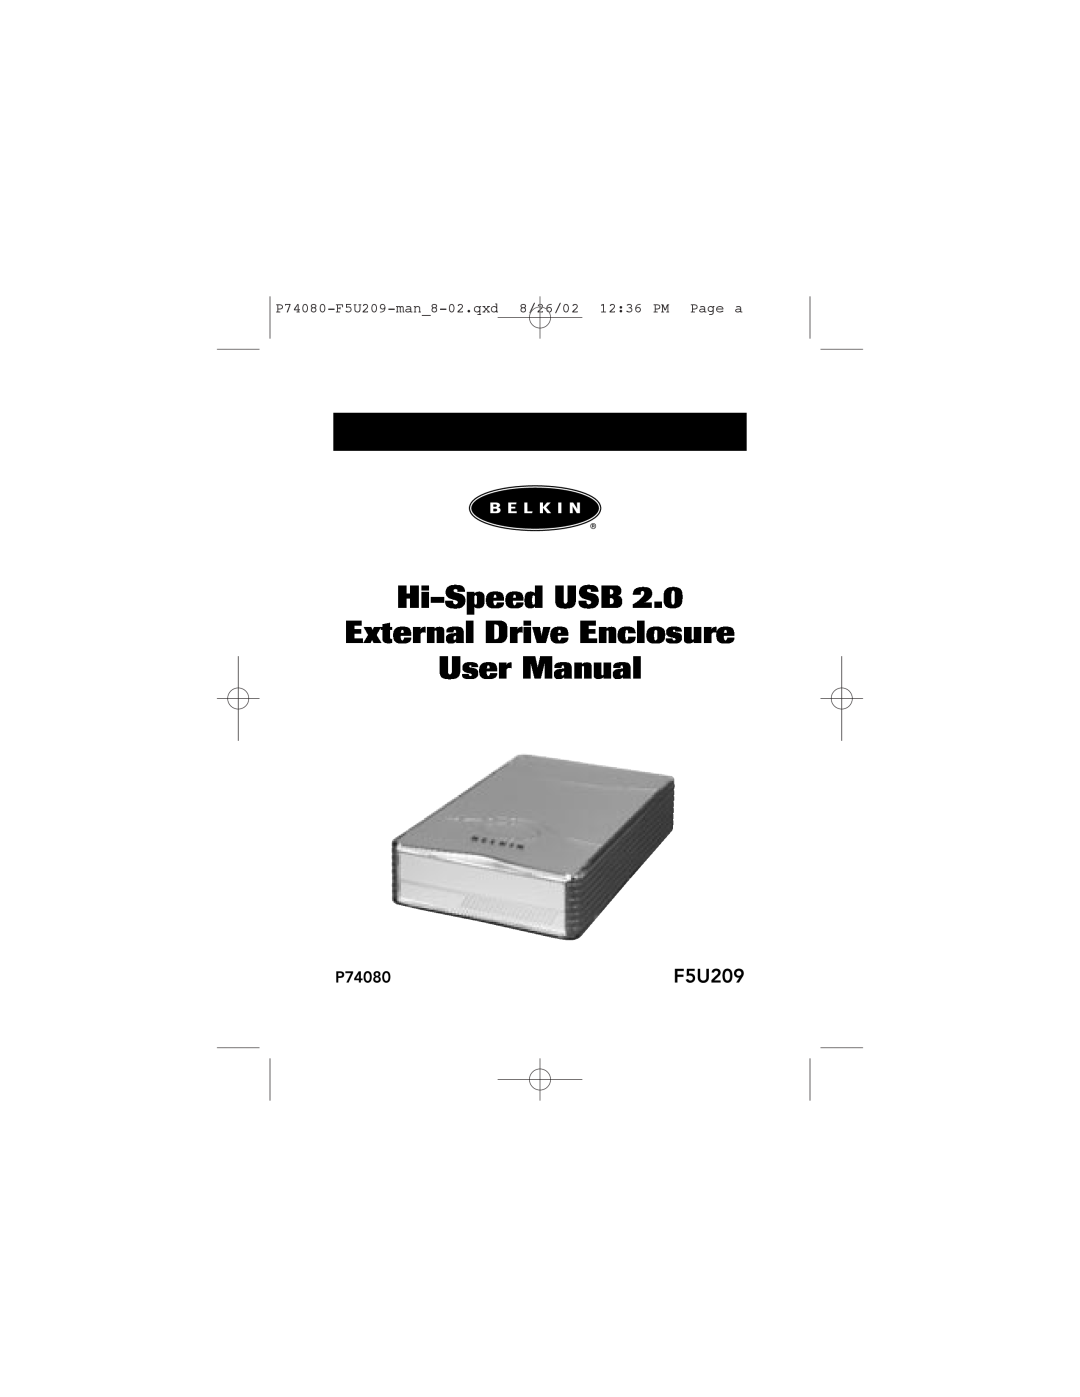 Belkin user manual P74080-F5U209-man8-02.qxd 8/26/02 1236 PM Page a, Hi-Speed USB External Drive Enclosure User Manual 